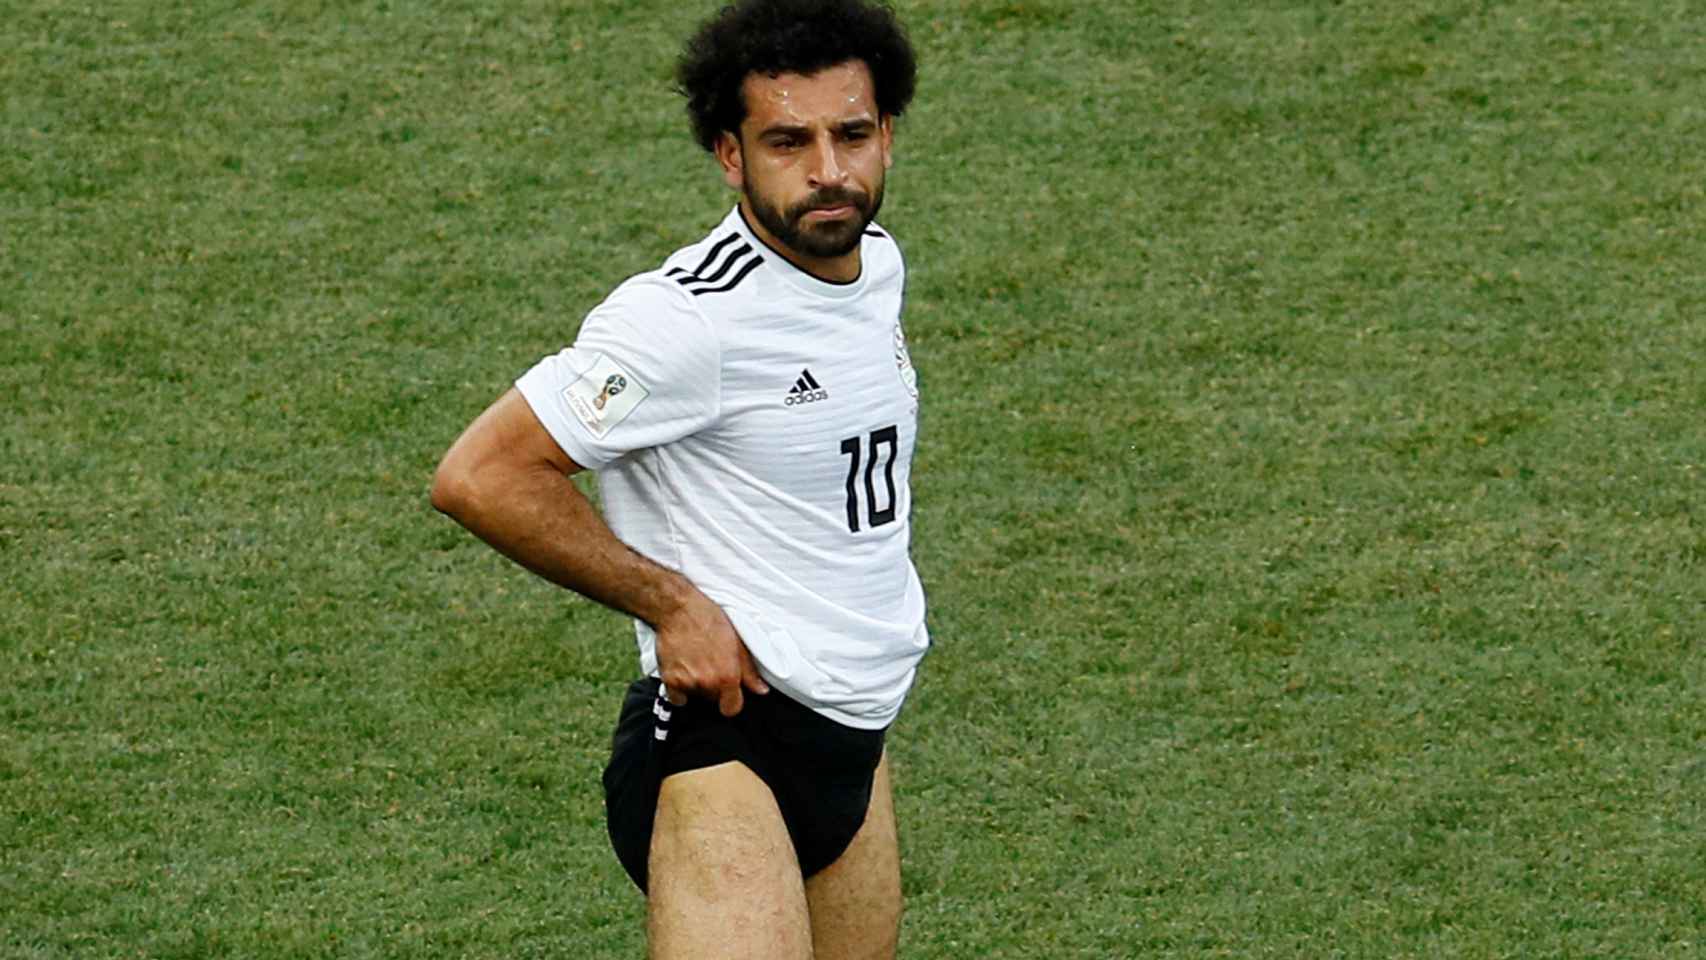 ¿Quién sacó a Egipto del Mundial